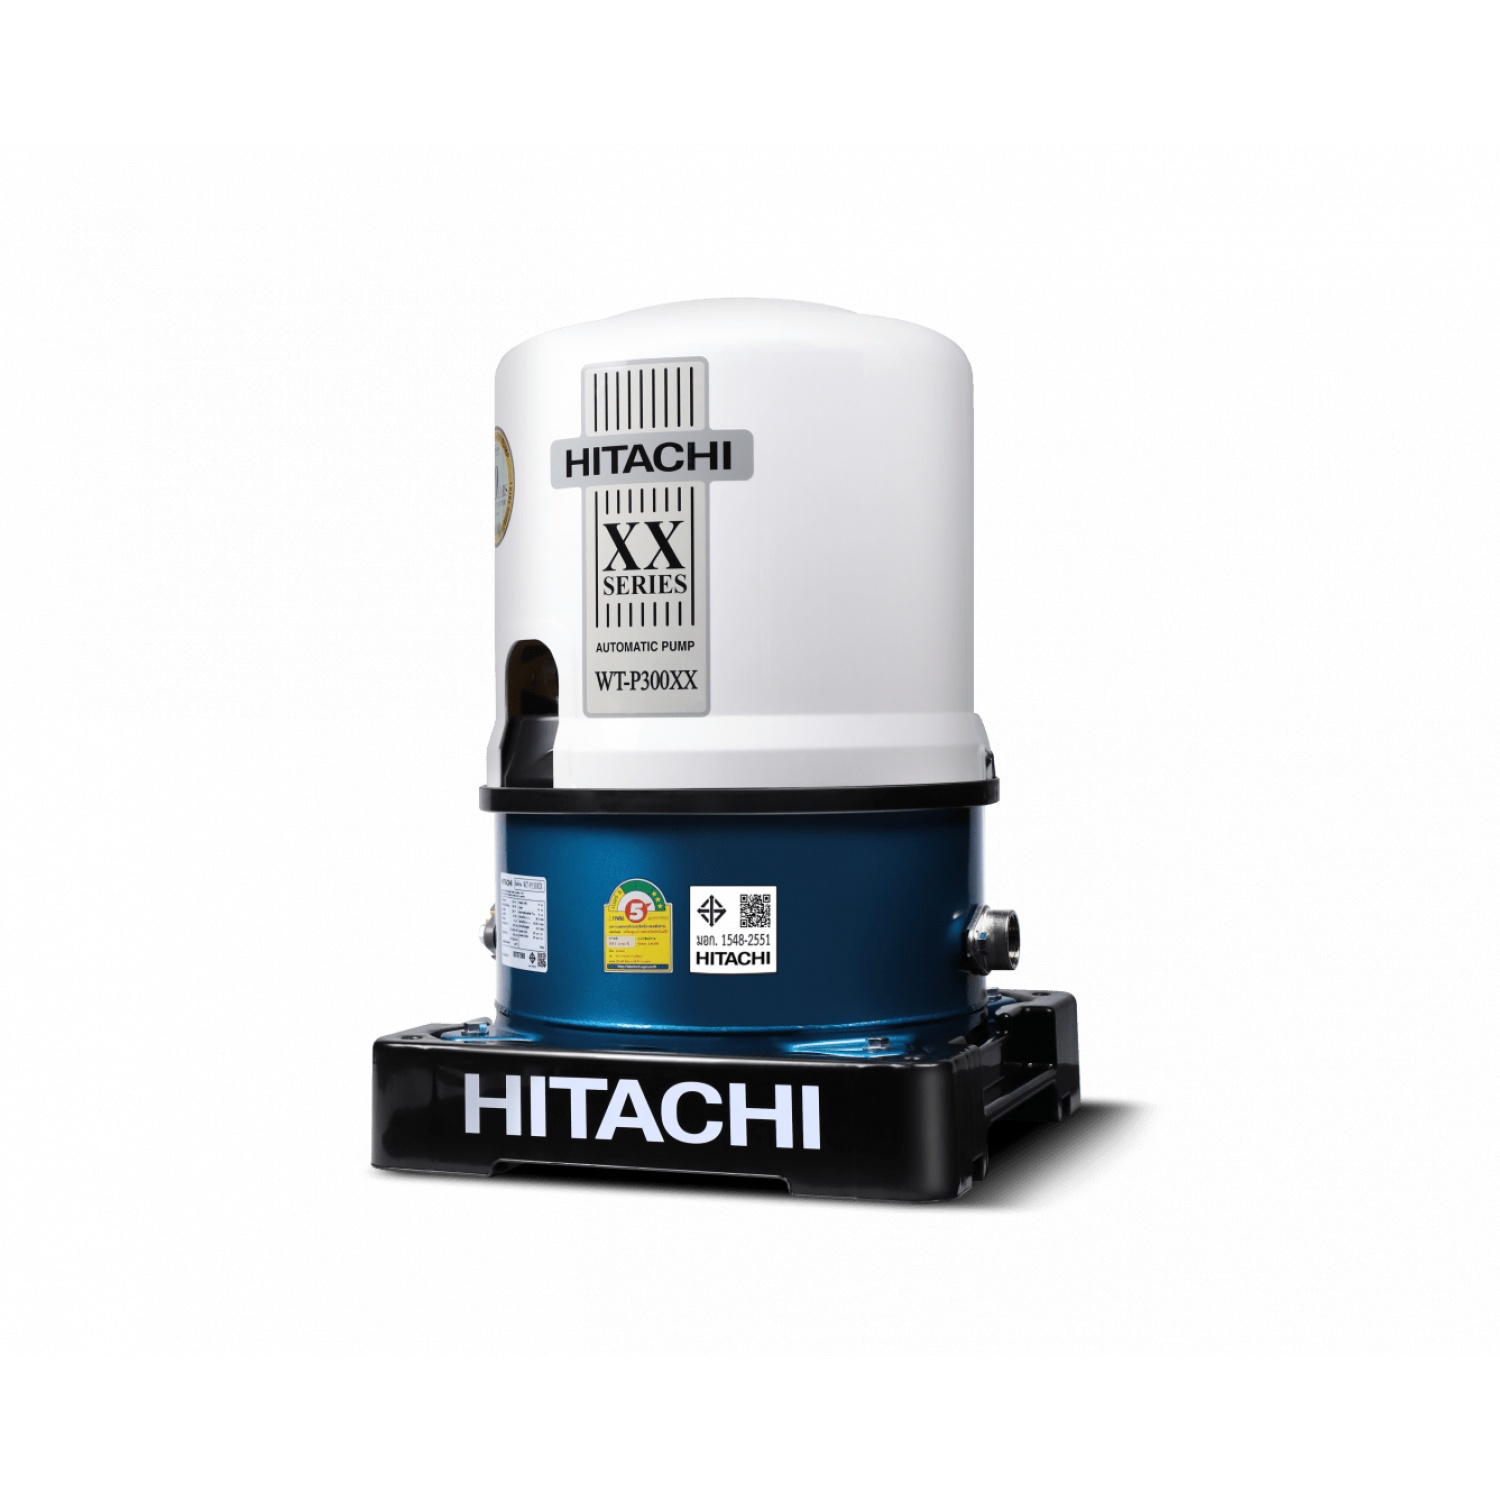 HITACHI ปั๊มน้ำอัตโนมัติ 300W รุ่น WT-P300XX